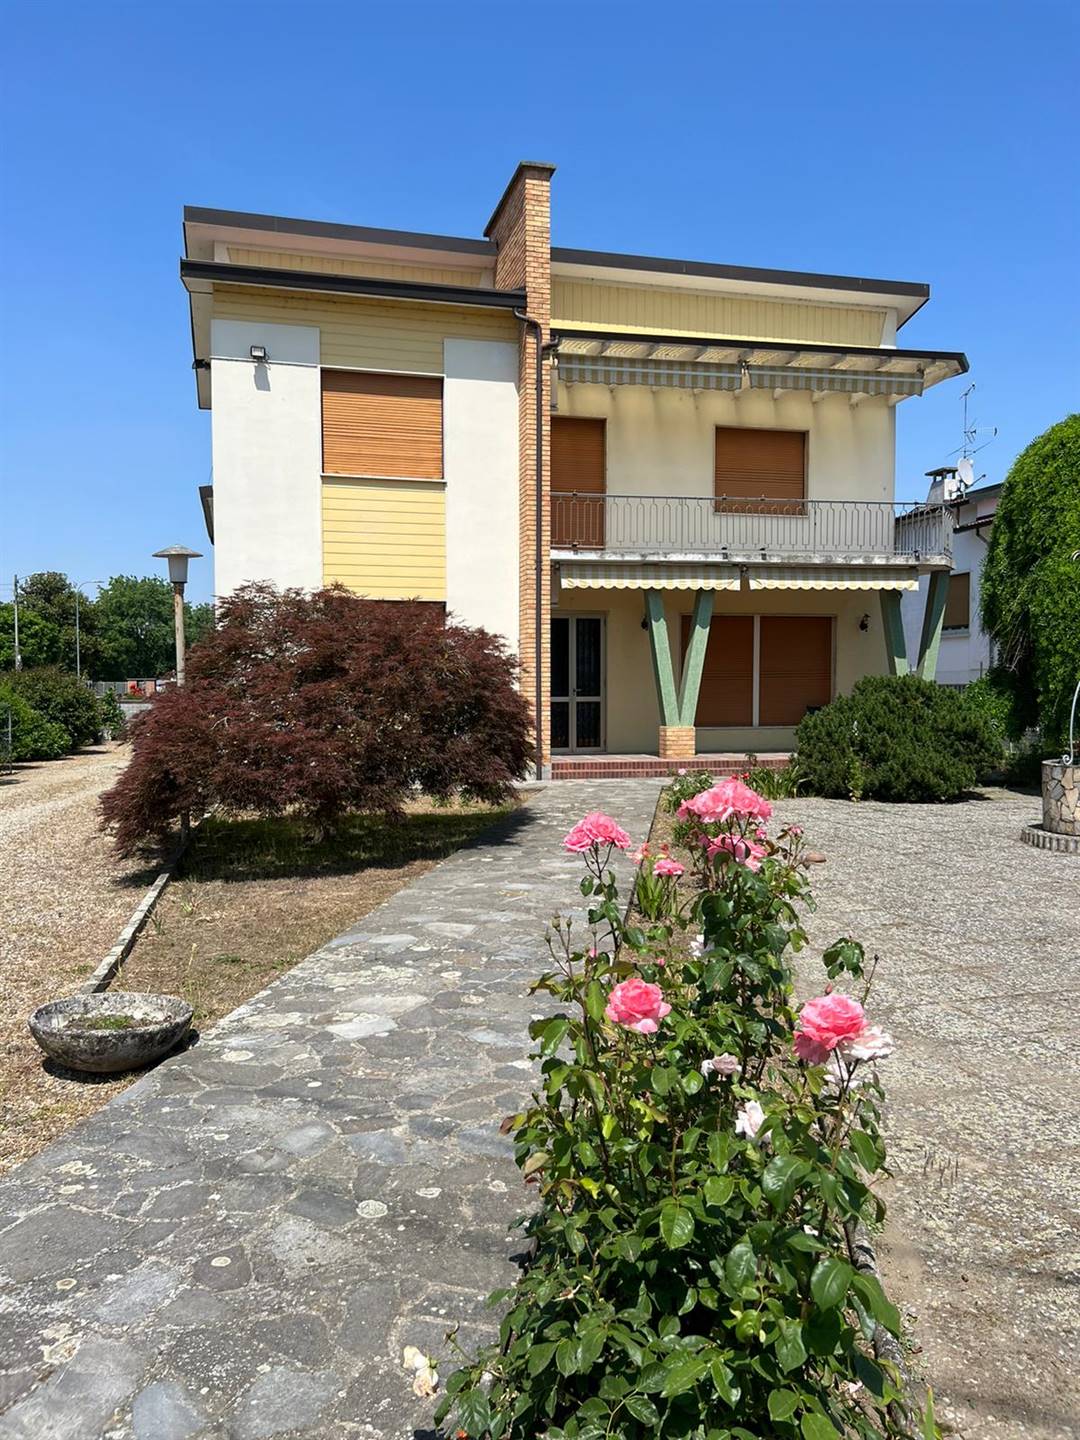 Villa in vendita a Valle Lomellina, 10 locali, prezzo € 190.000 | PortaleAgenzieImmobiliari.it